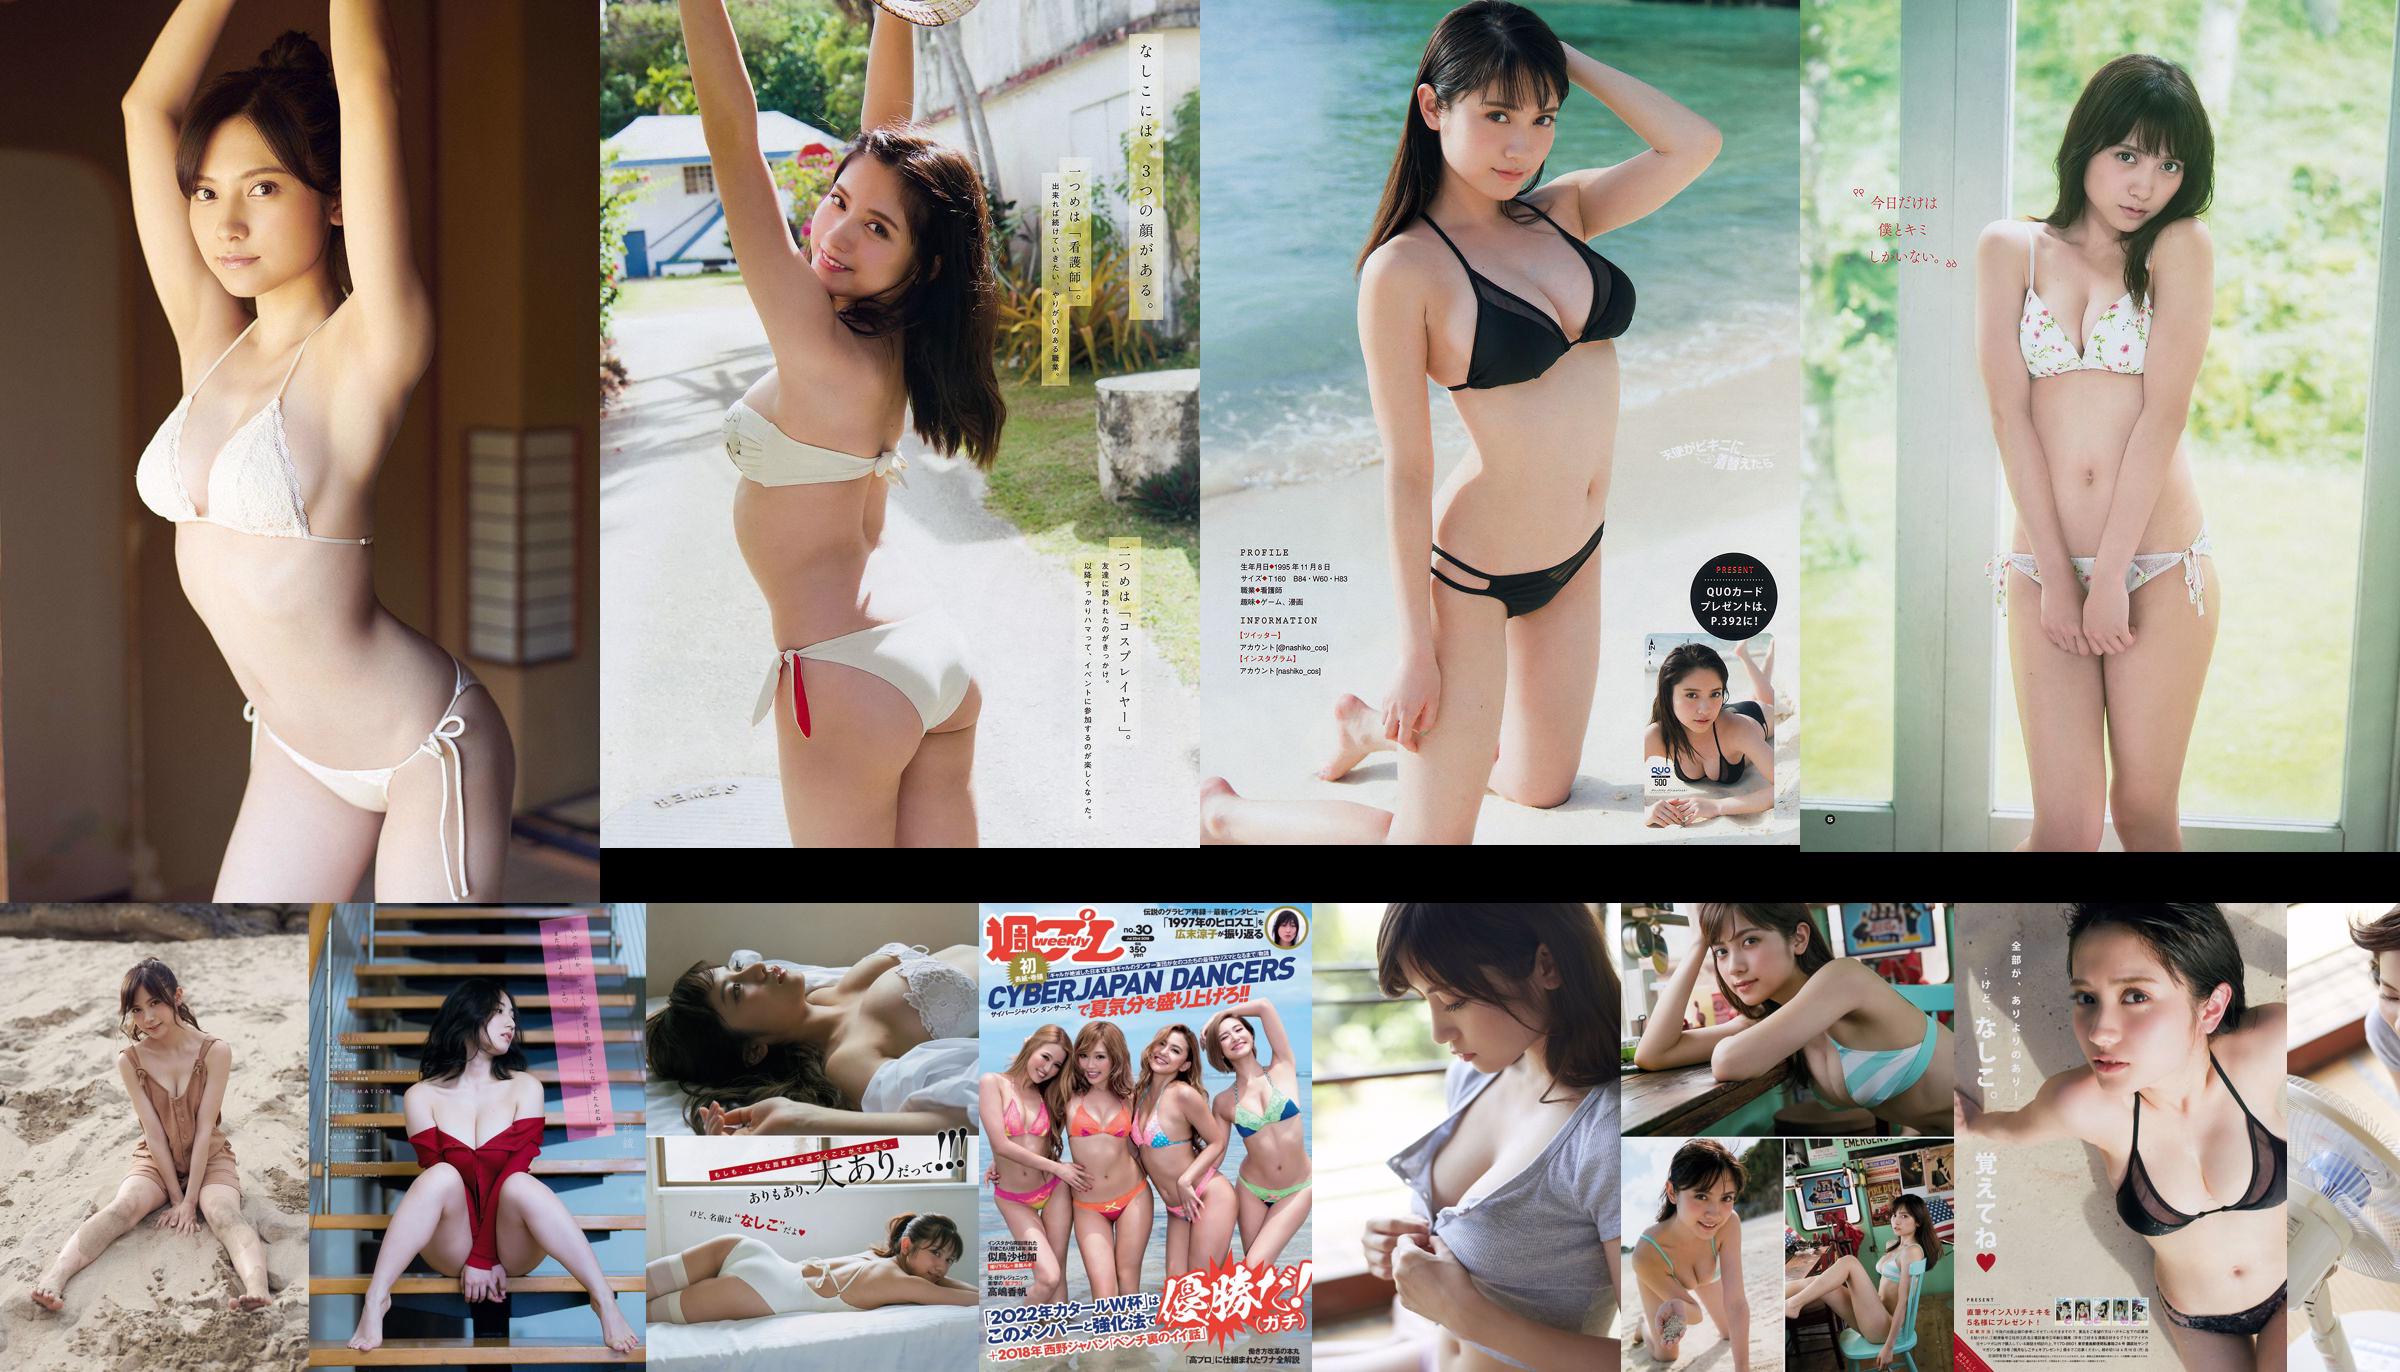 Nashiko Momotsuki Yuka Sugai Natsumi Ikema Raw Oyster Imoko Sae Murase Mao Akutsu [Weekly Playboy] Foto No.23 2018 No.d8e1ee Halaman 5